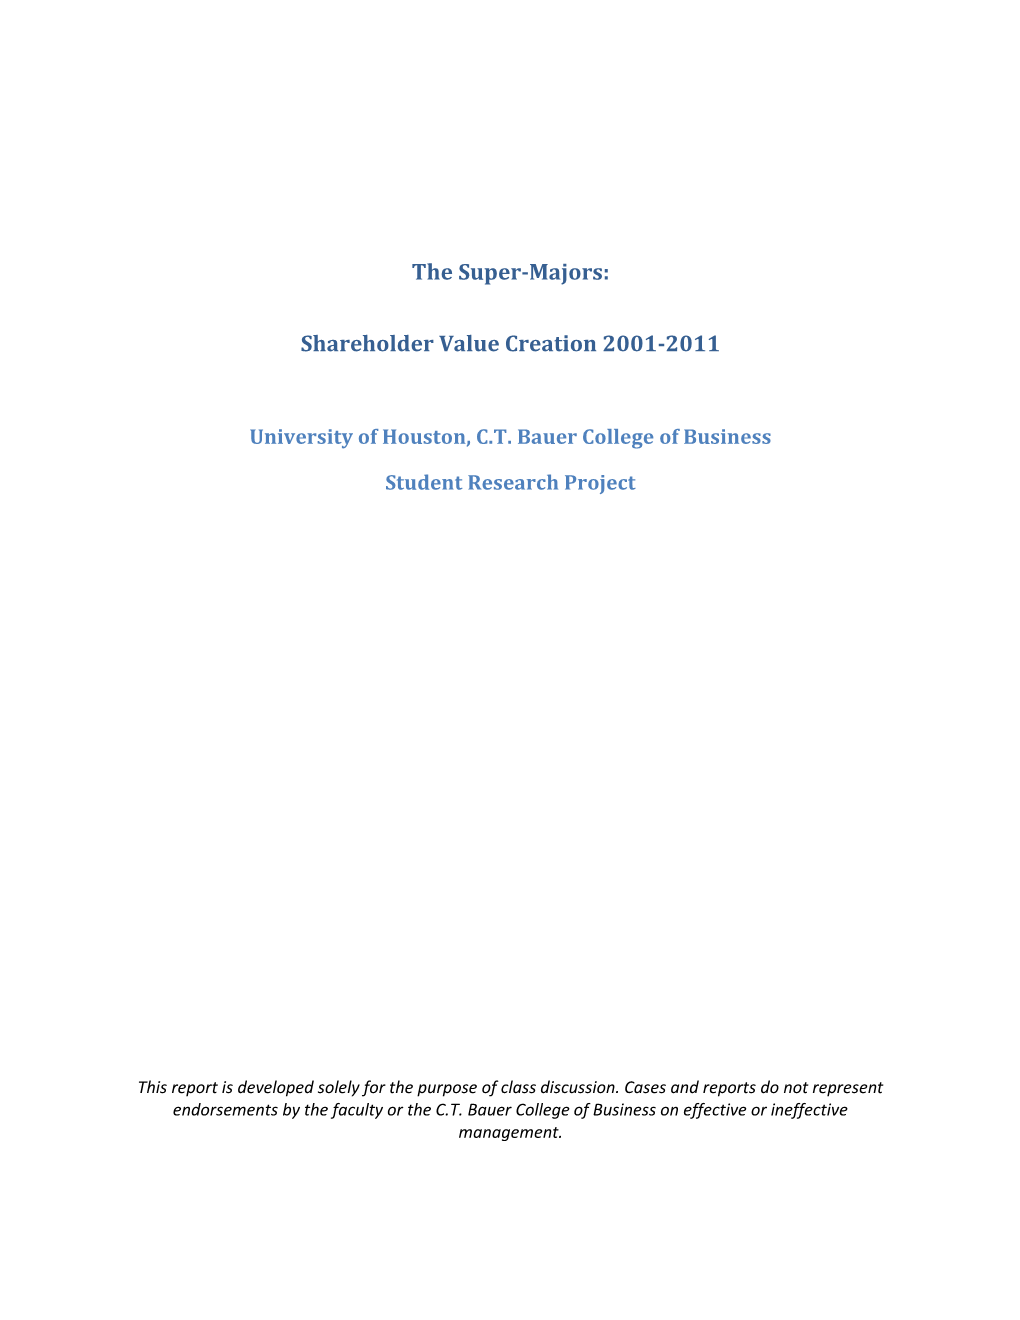 The Super-Majors: Shareholder Value Creation 2001-2011